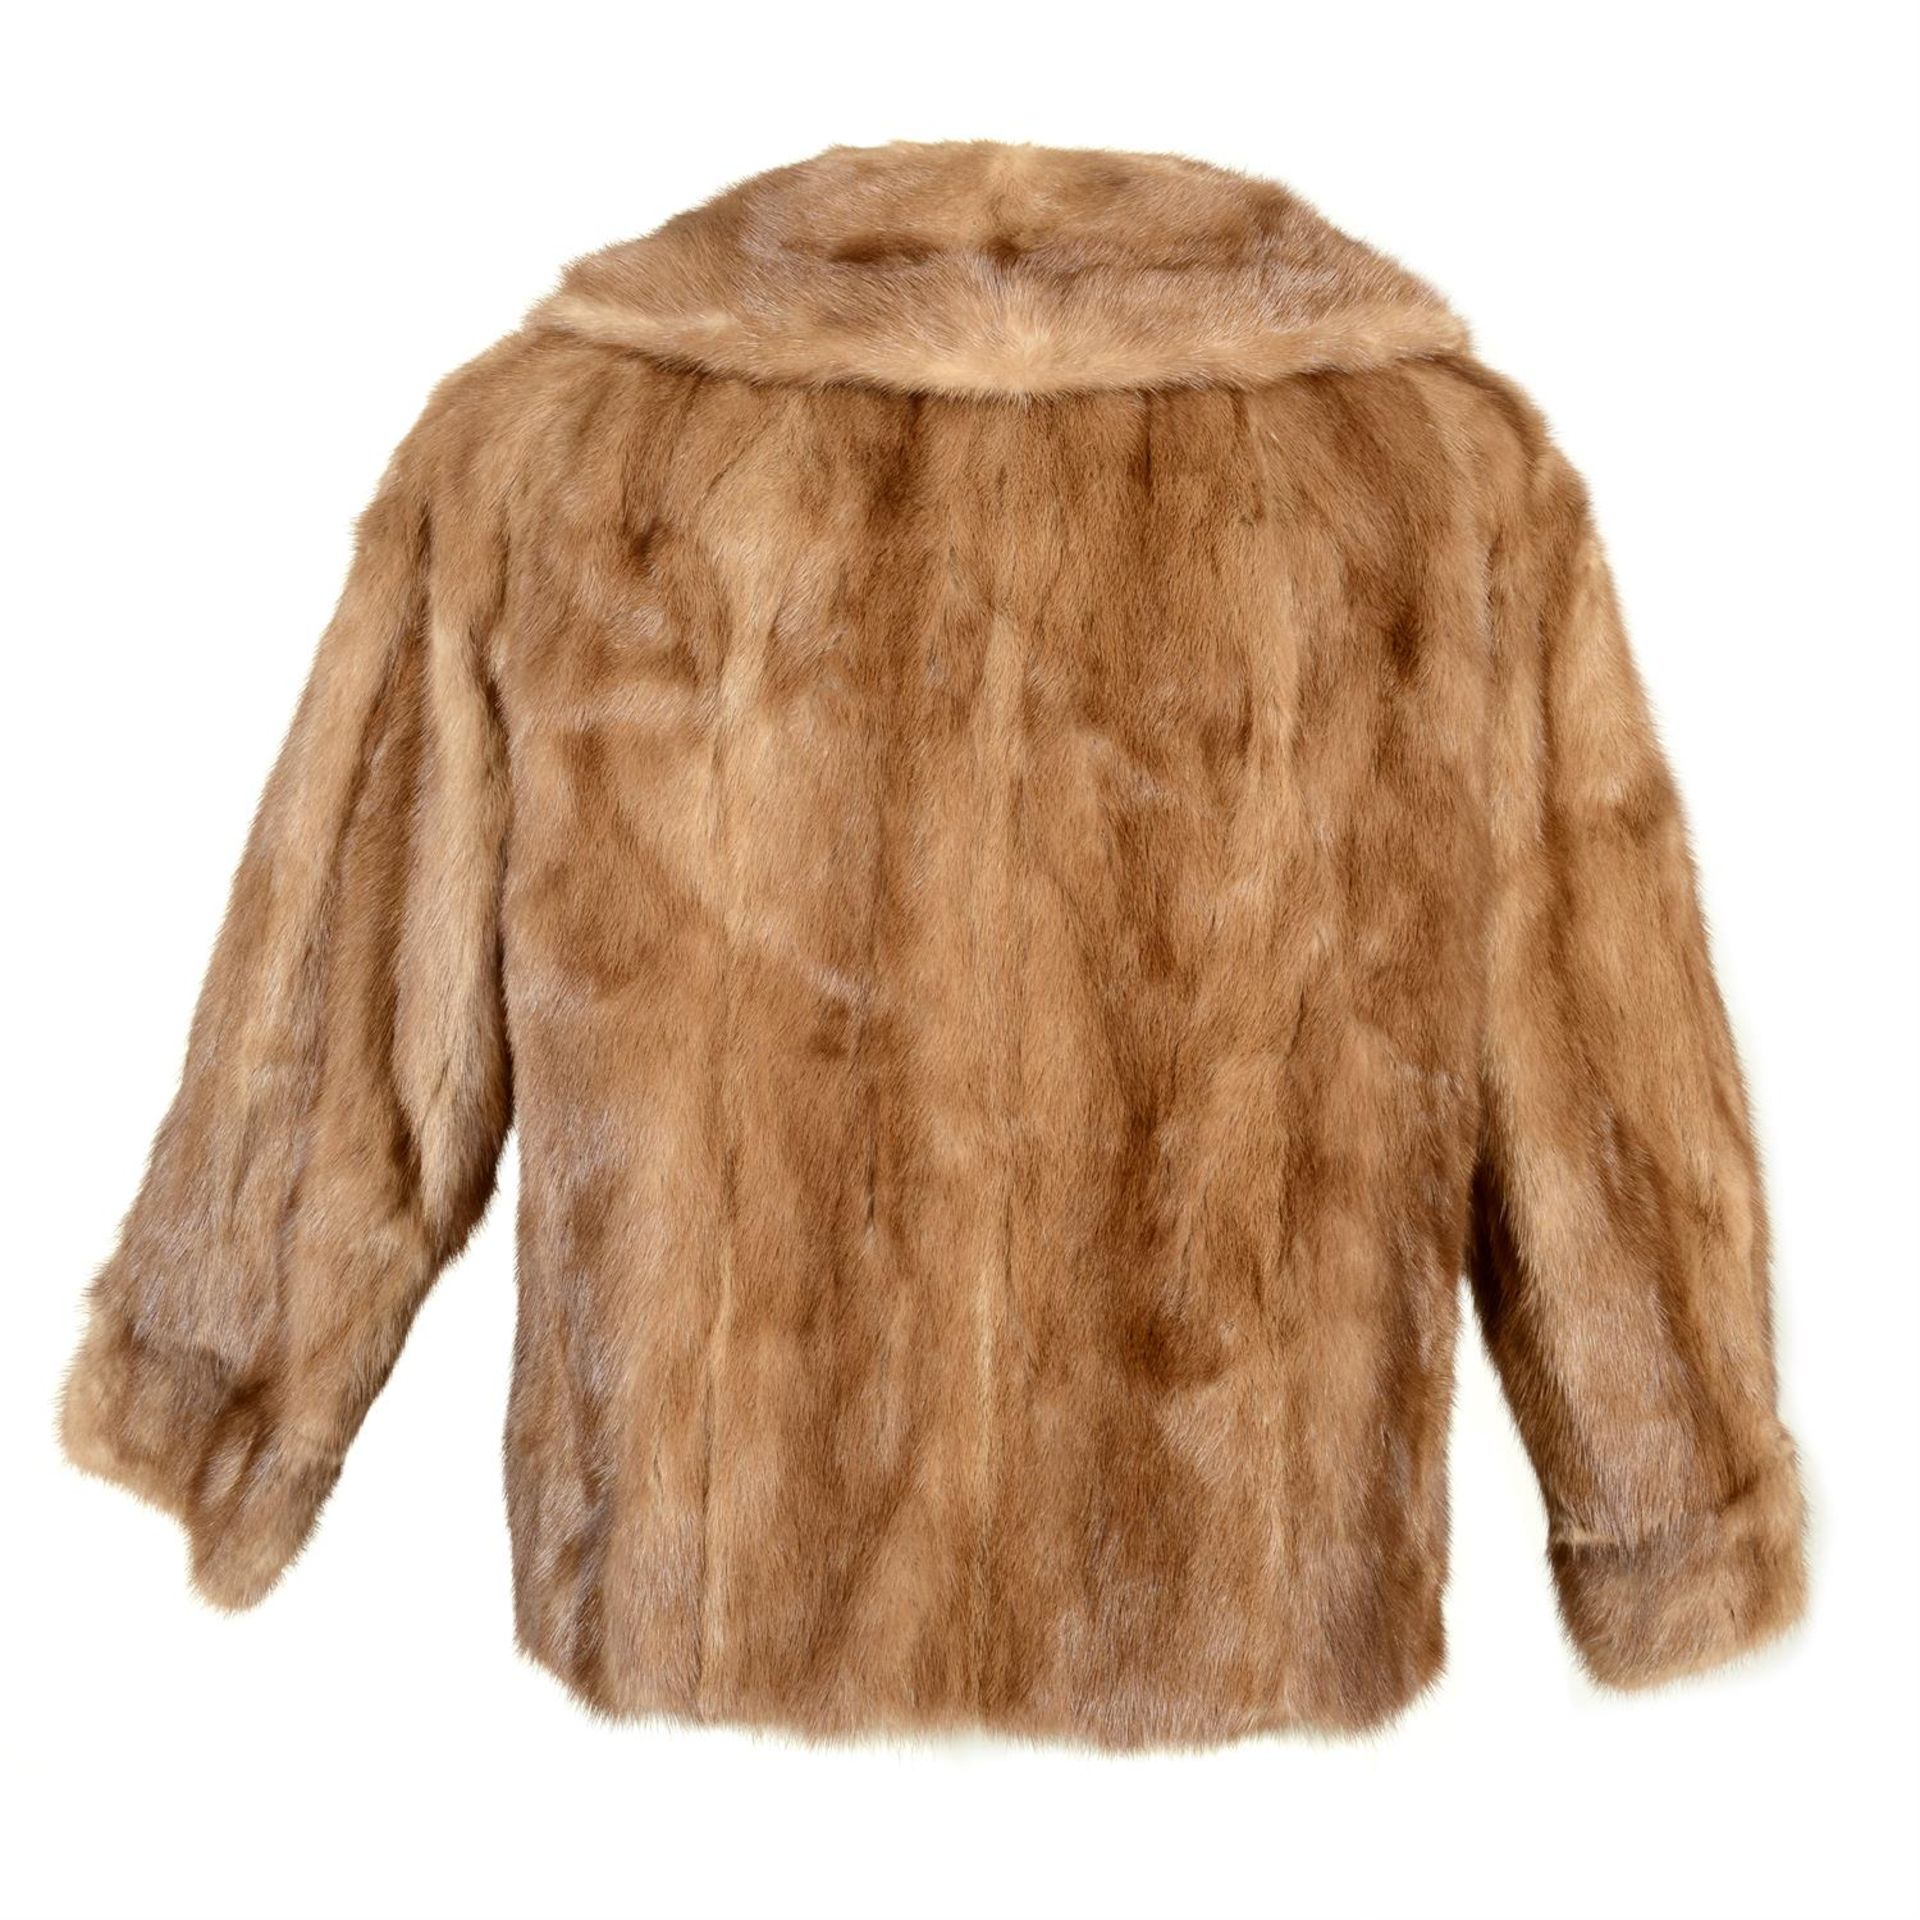 A short length mink fur jacket. - Image 2 of 2